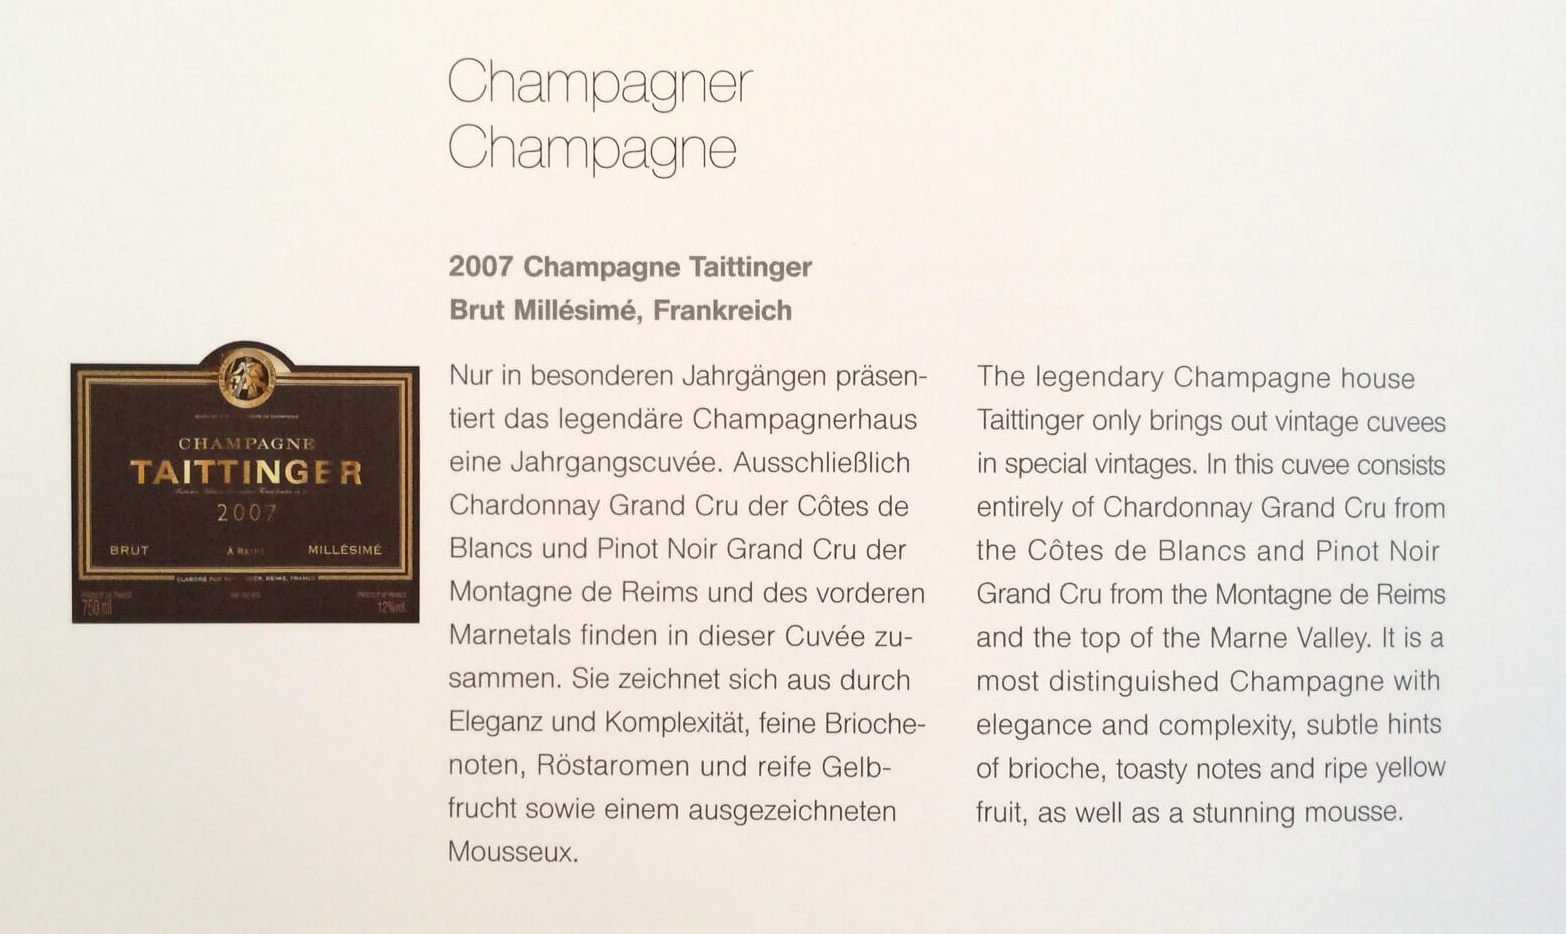 Champagne, Lufhansa first class